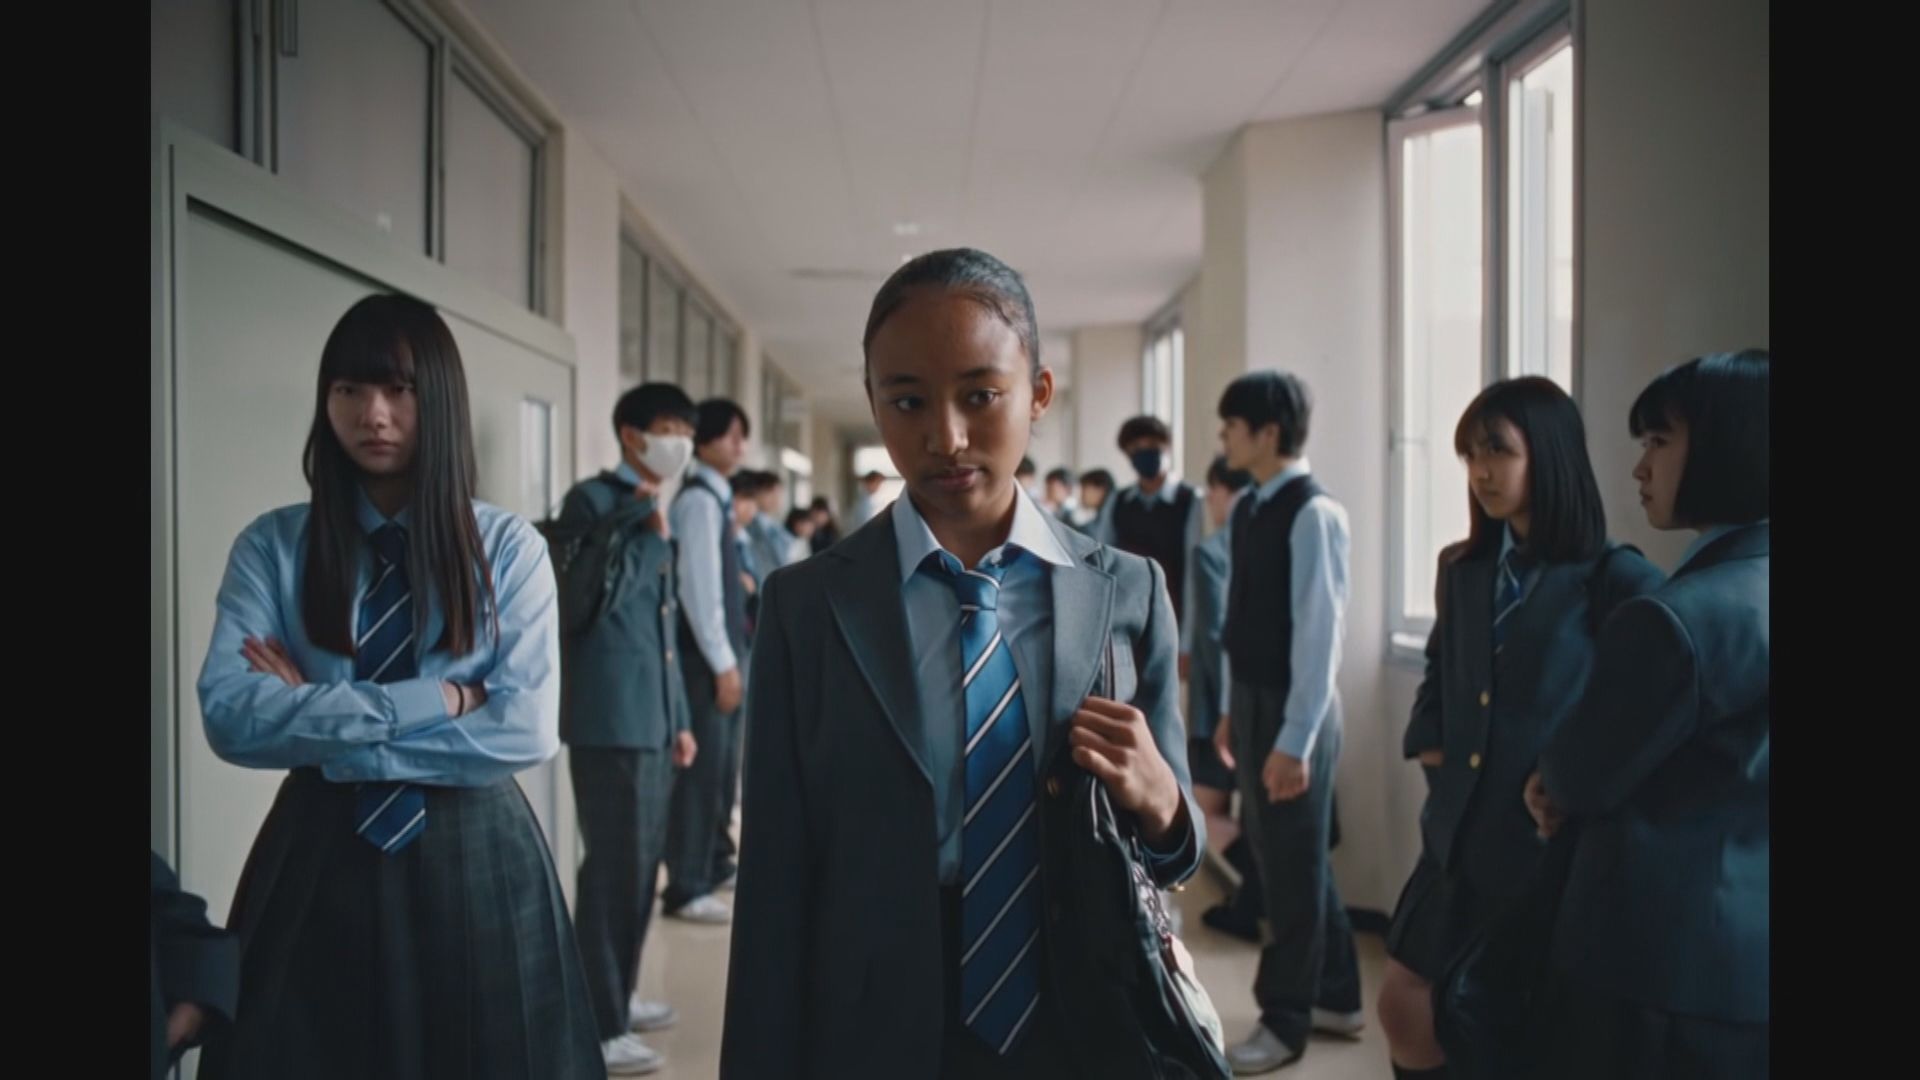 【環球薈報】NIKE廣告被指影射日本人種族歧視惹爭議